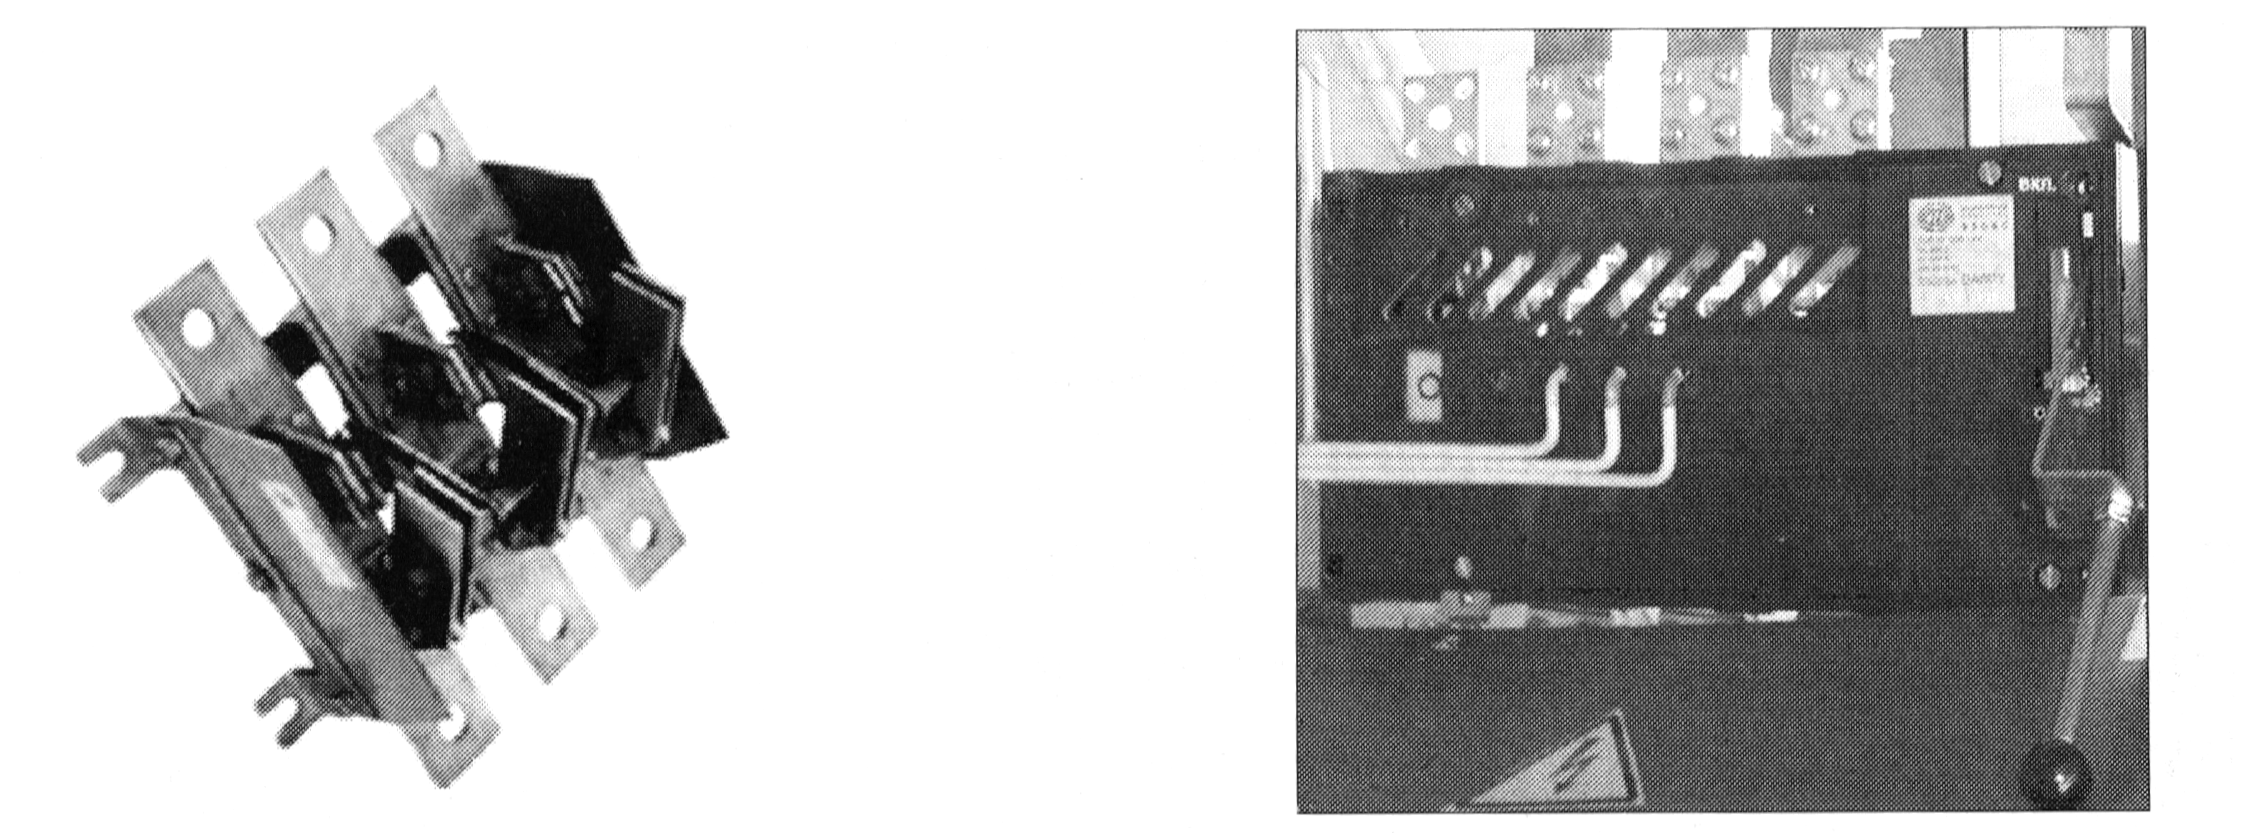 Общий вид рубильников с ручным приводом типа РЕ (слева) и пружинным приводом типа 